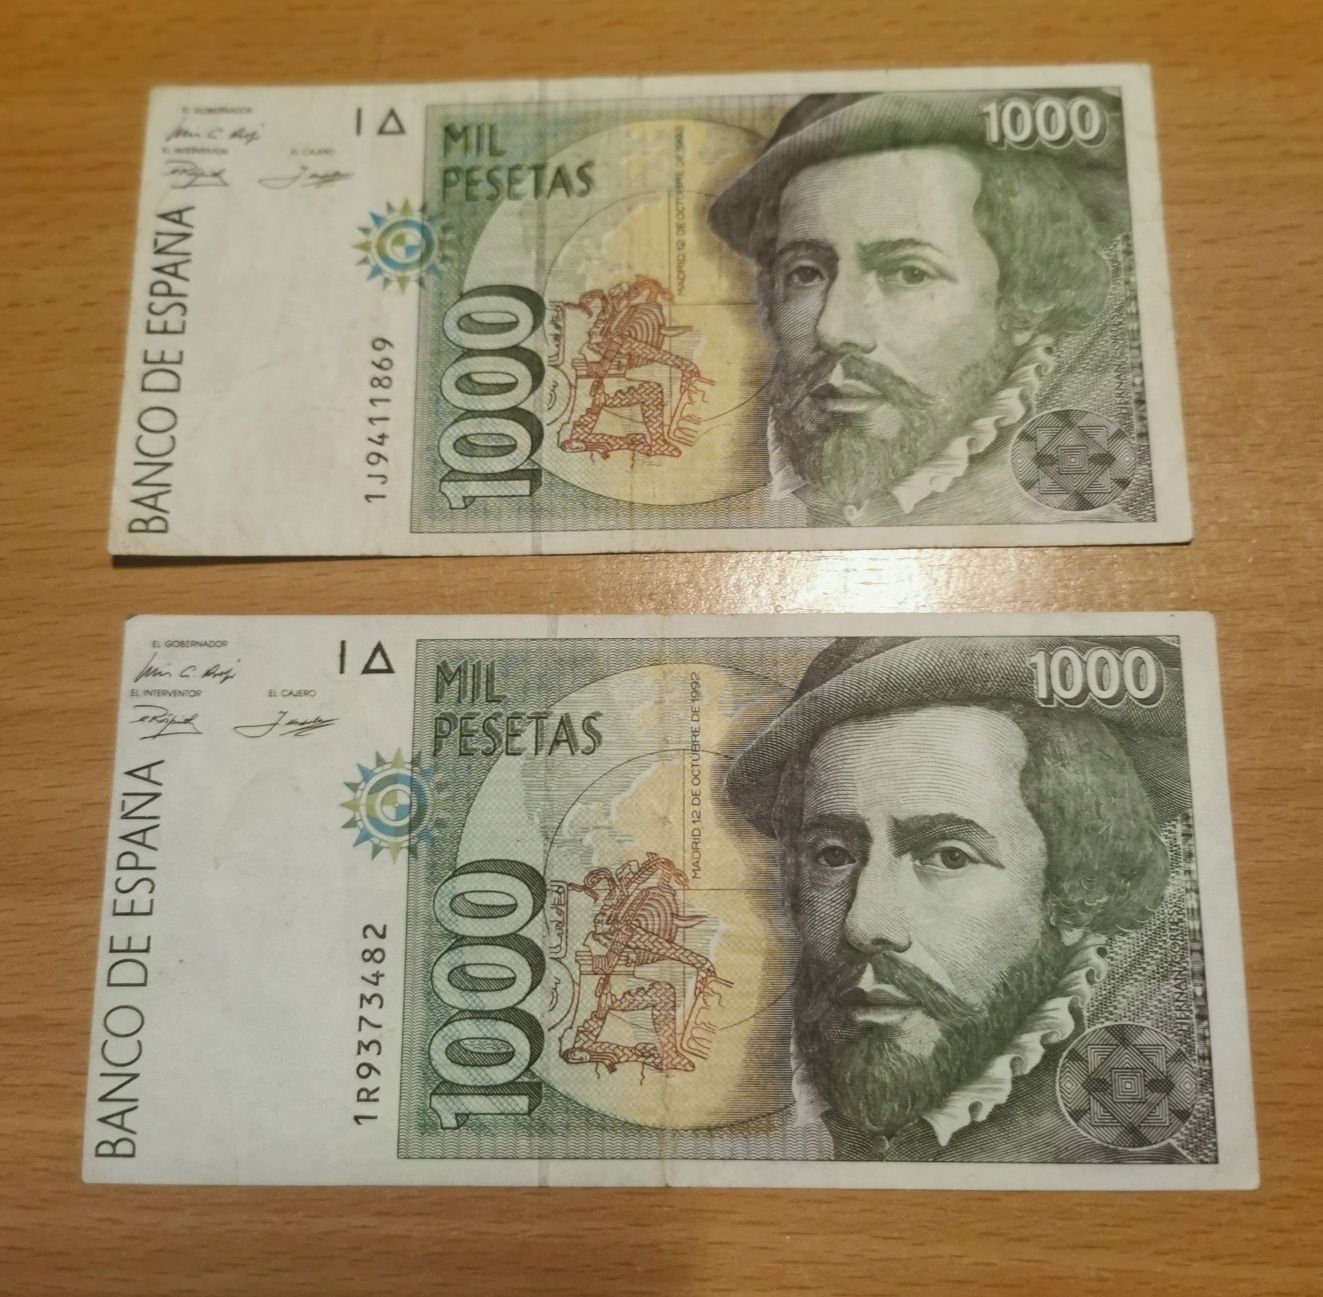 Vendo 2 notas de 1000 pesetas (Espanha)